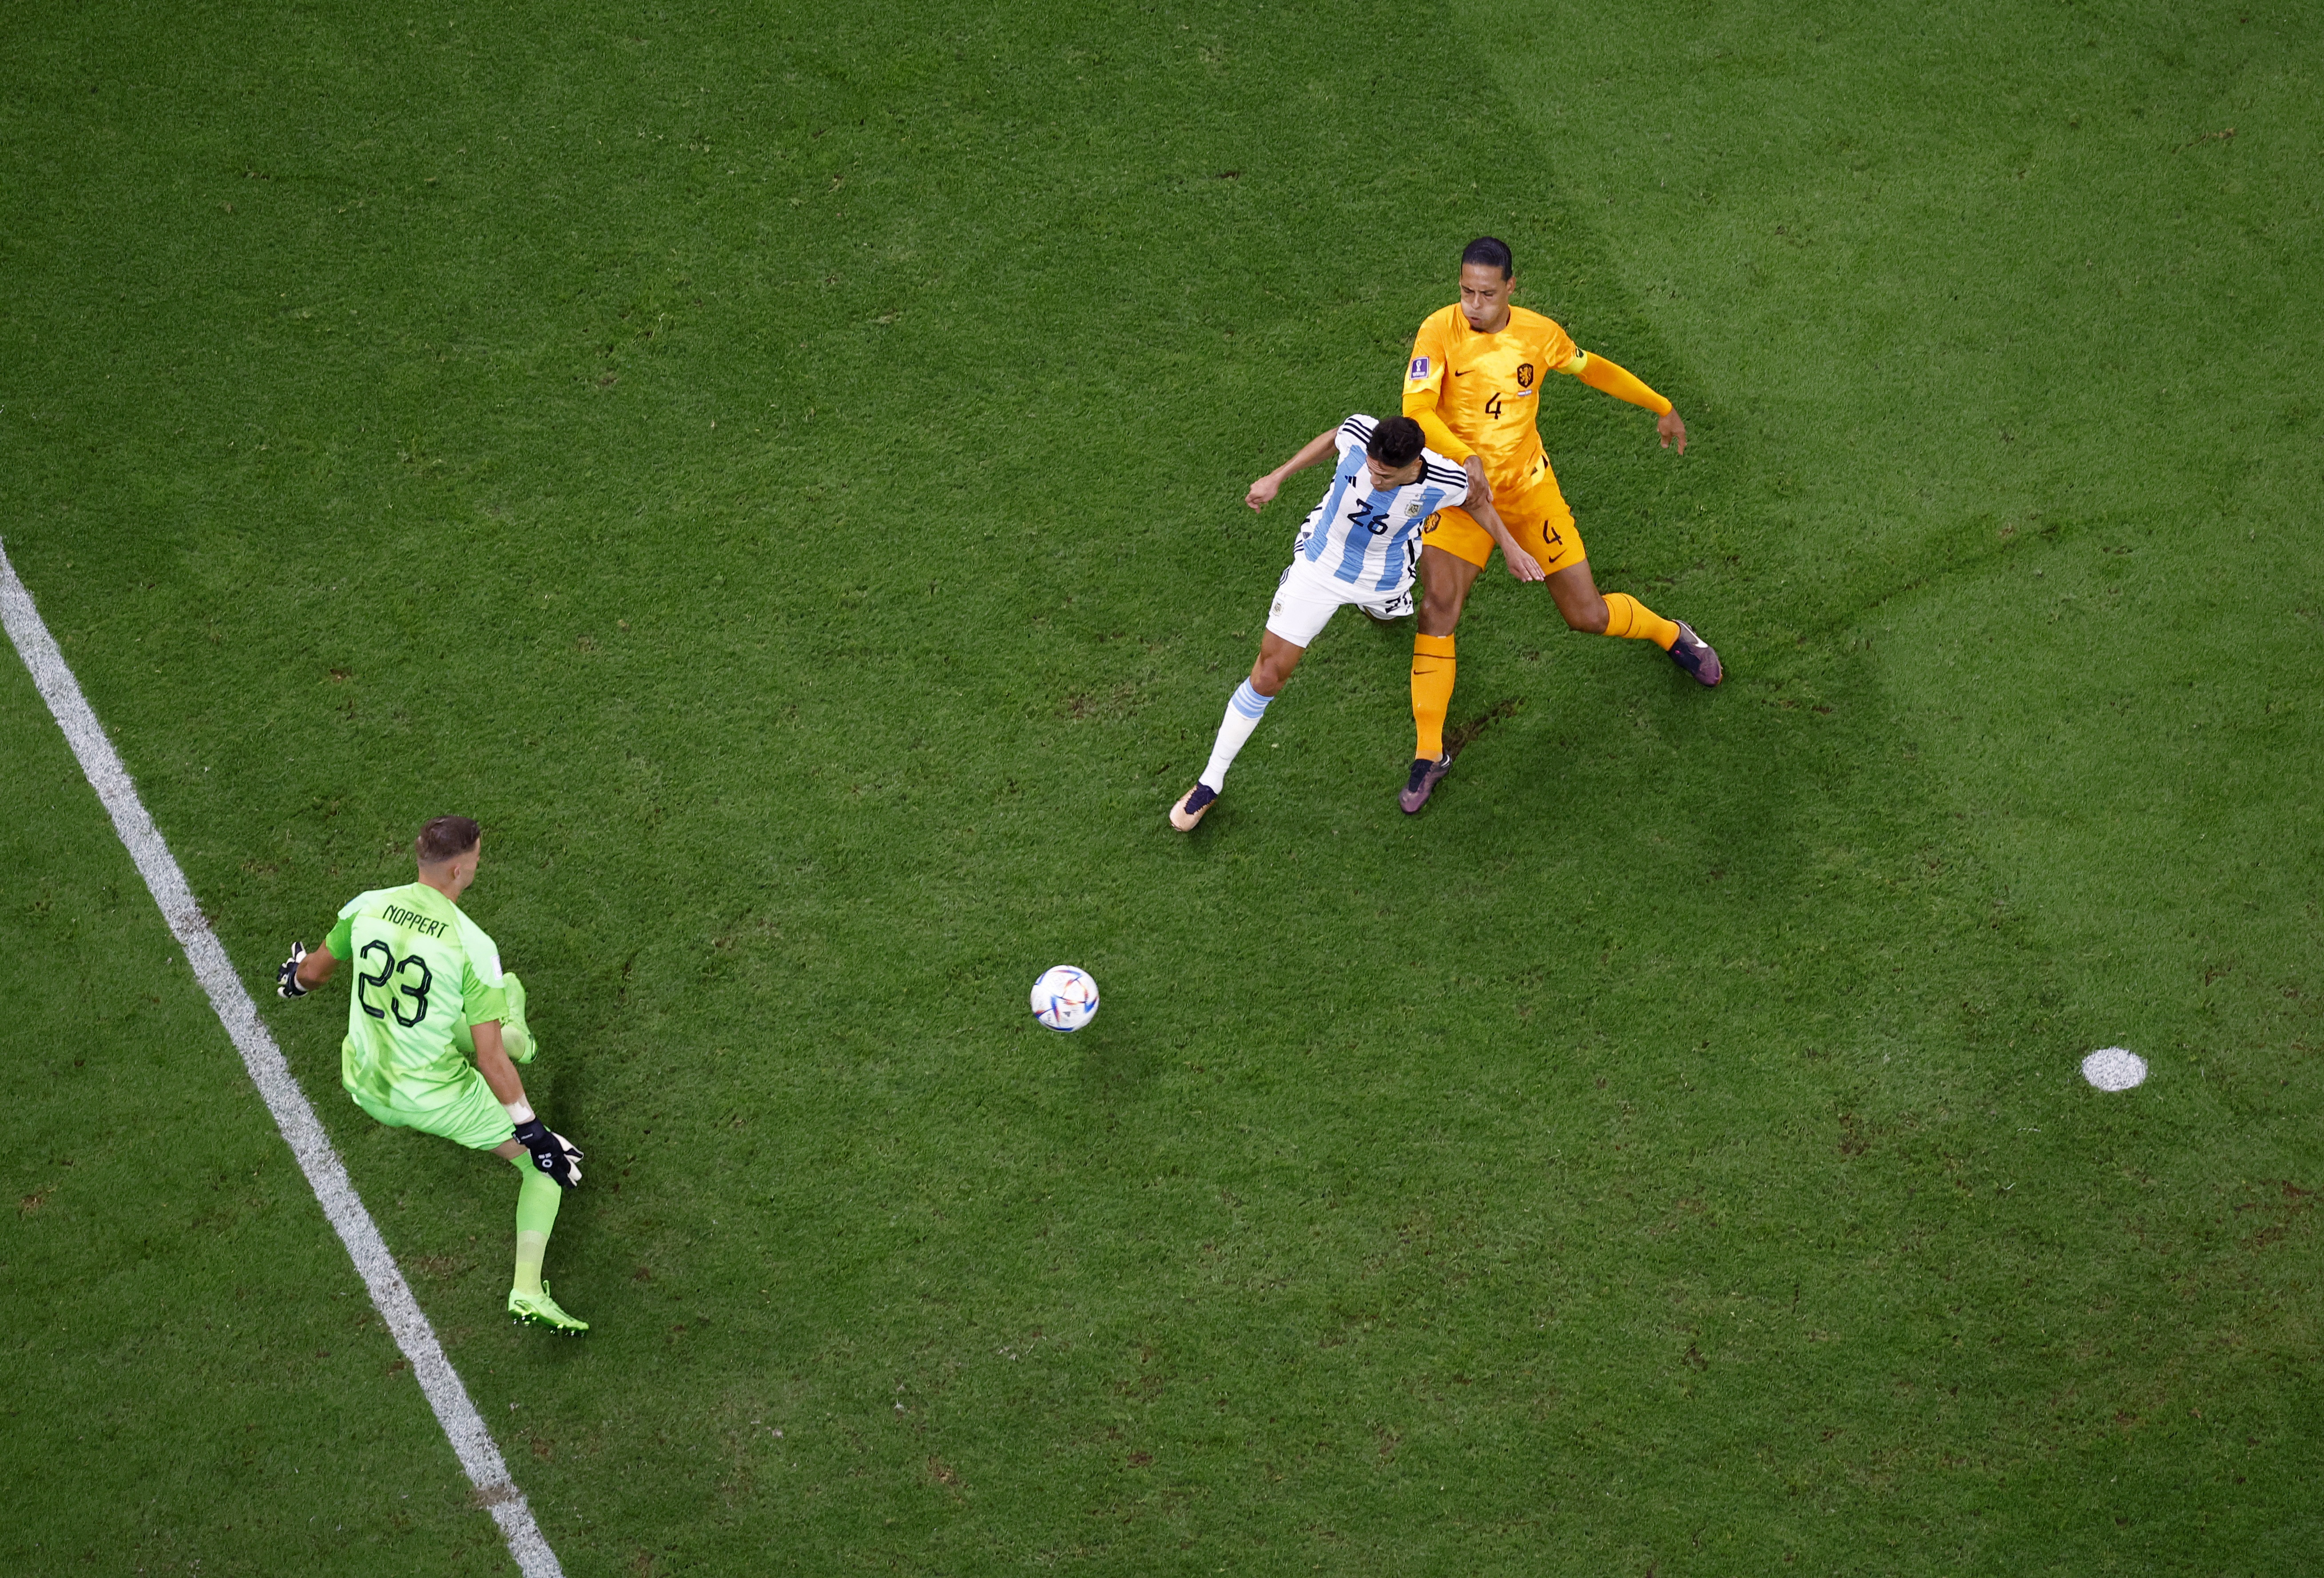 Nahuel Molina aguante la marca de Virgil van Dijk y define al gol (Foto: Reuters/ Peter Cziborra)